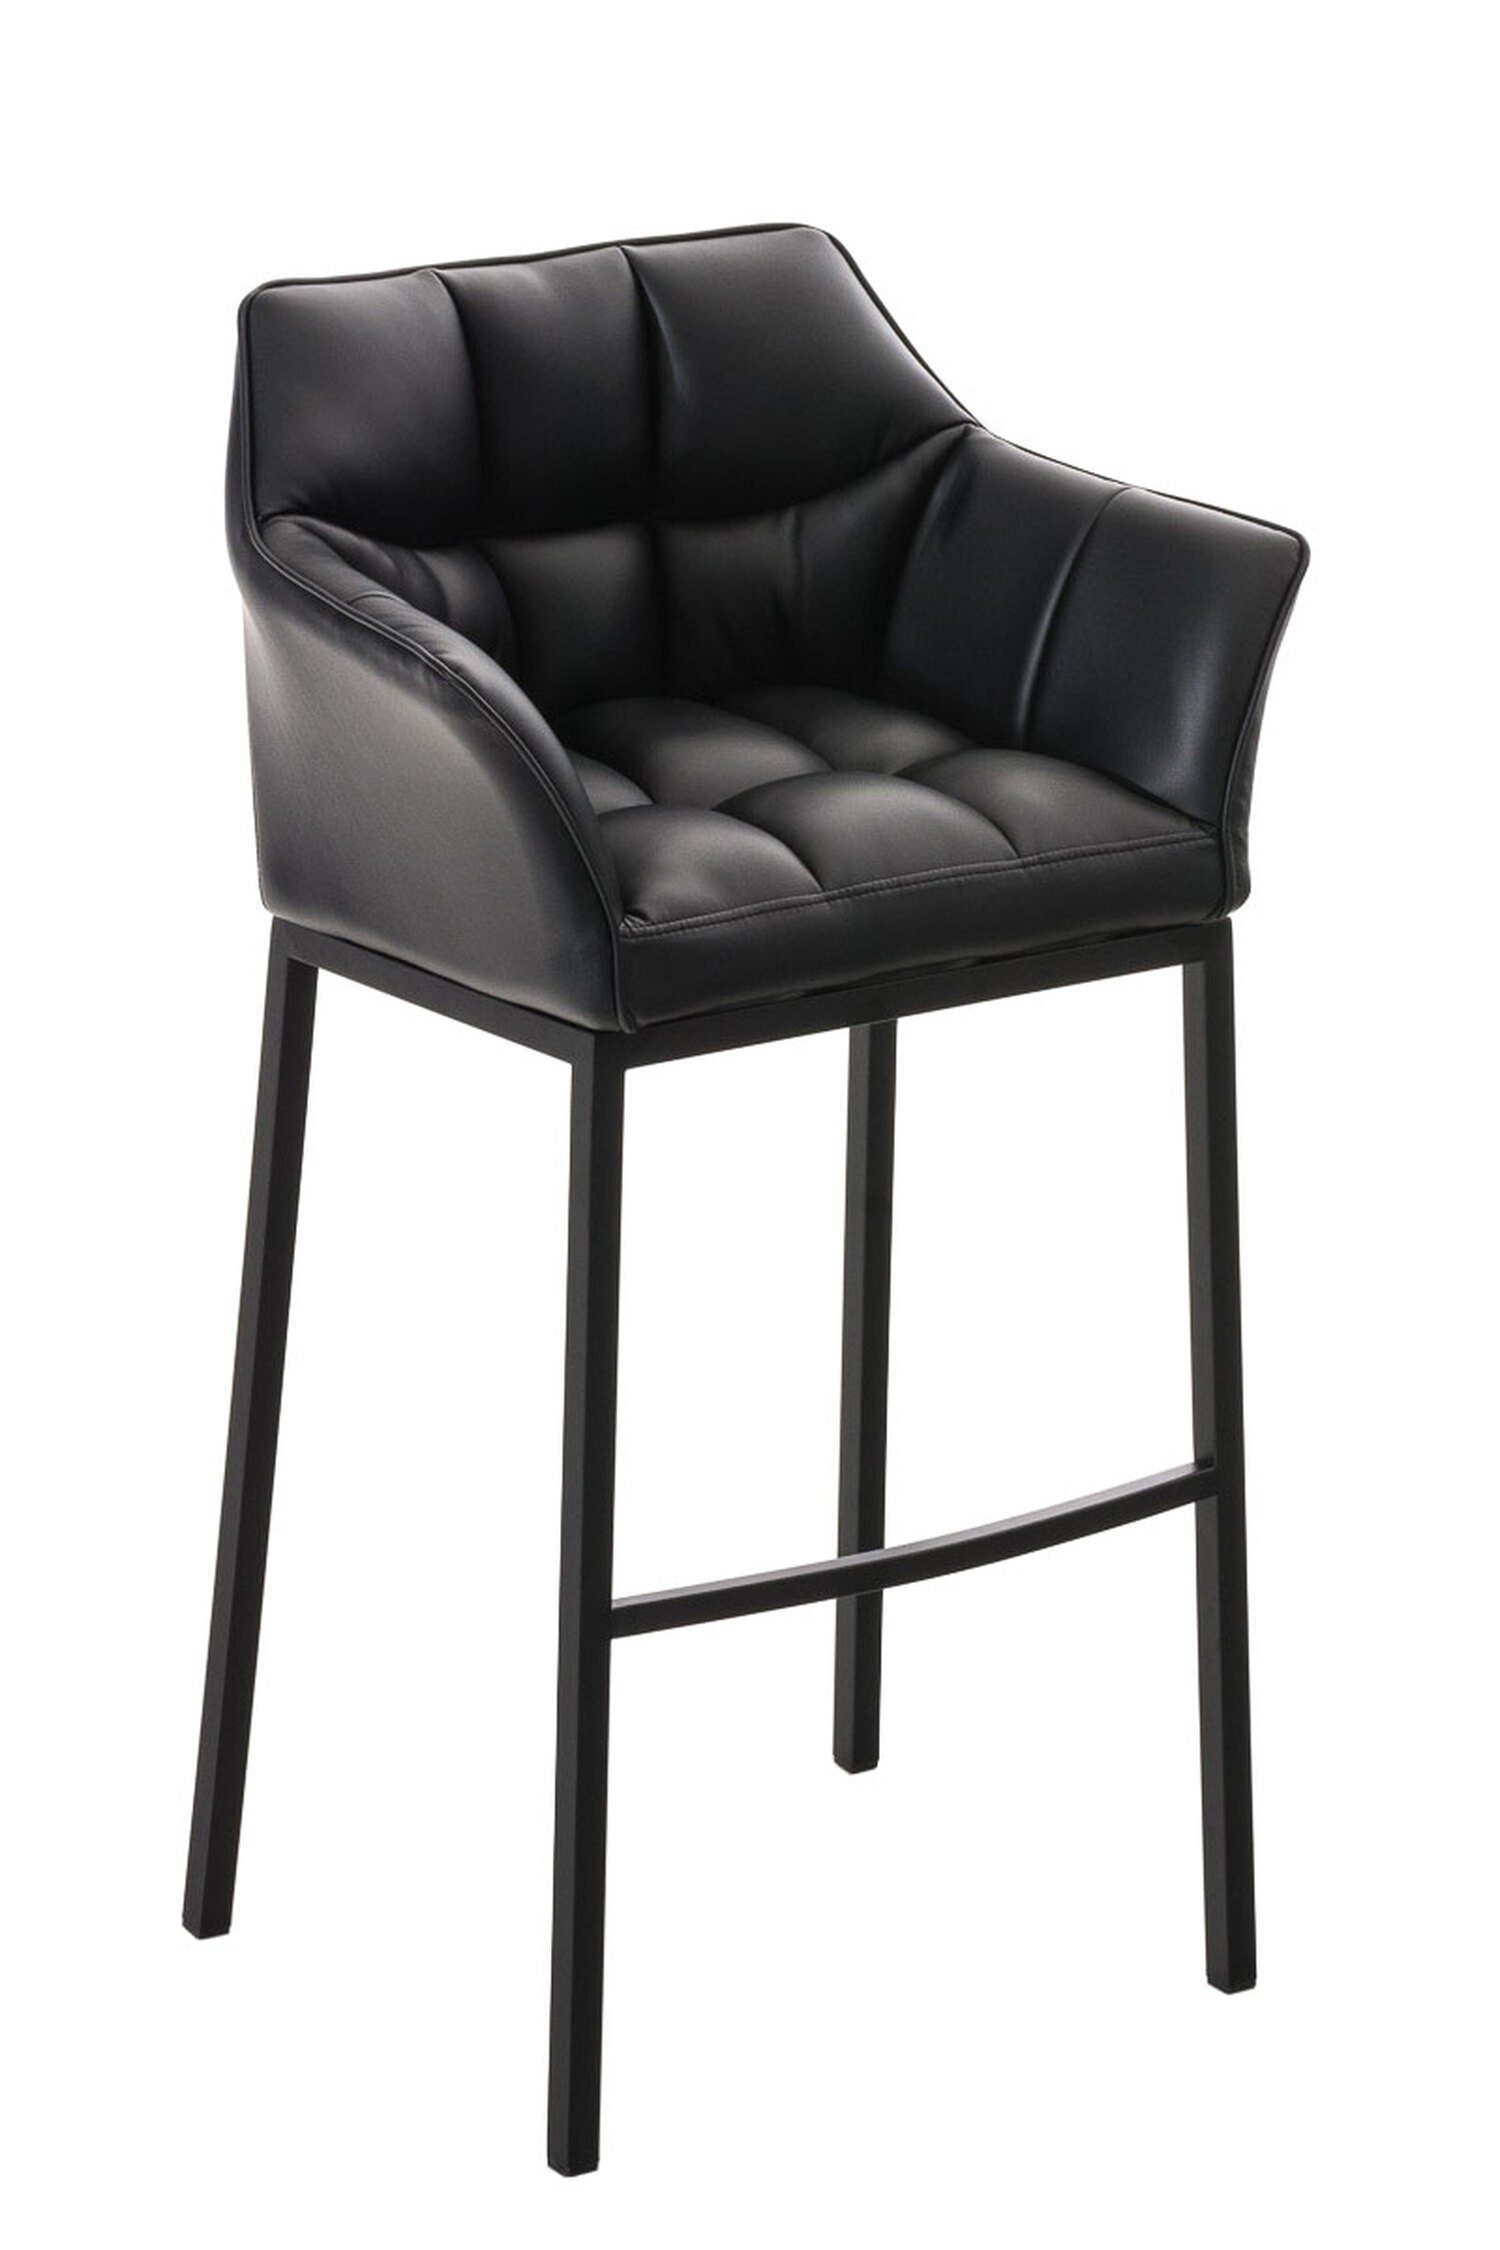 TPFLiving Barhocker Damaso (mit Rückenlehne und Fußstütze - Hocker für Theke & Küche), 4-Fuß Gestell schwarz - Sitzfläche: Kunstleder Schwarz